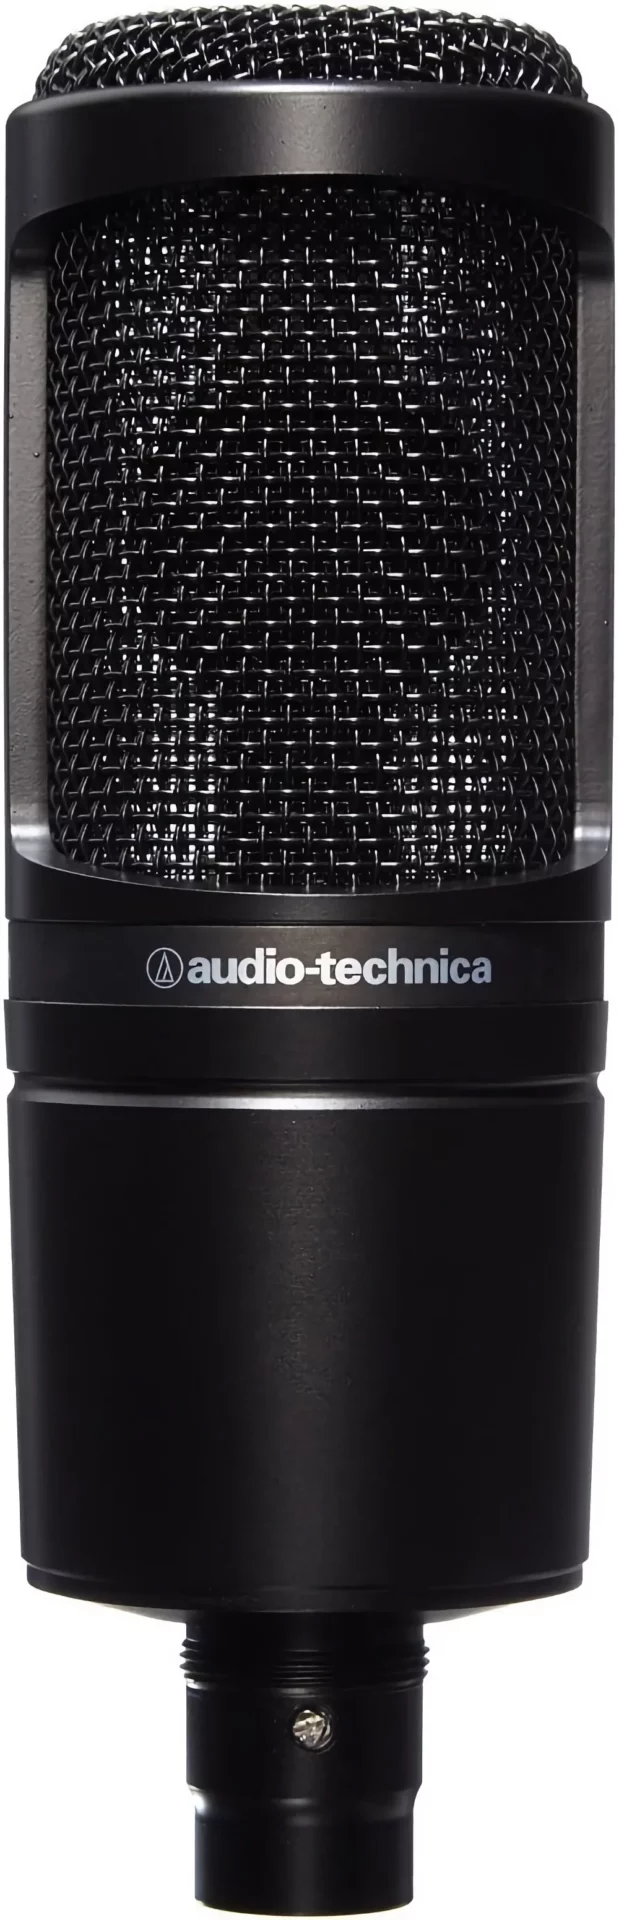 audio technica AT2020 Cardioid Condenser